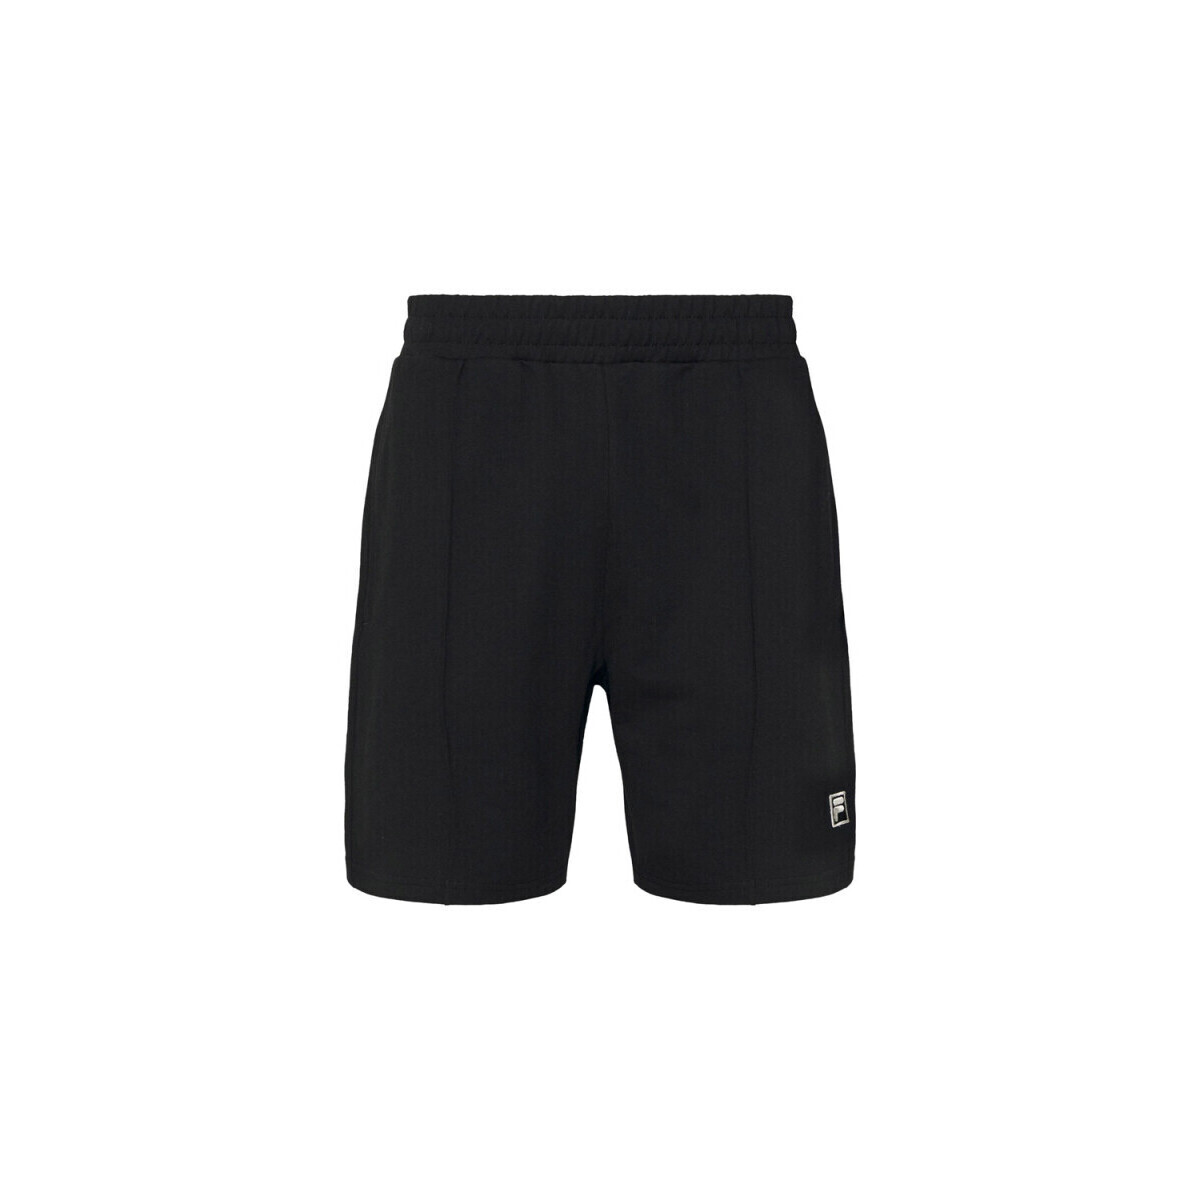 Vêtements Homme Shorts / Bermudas Fila SHORT BOYABAT  NOIR Noir